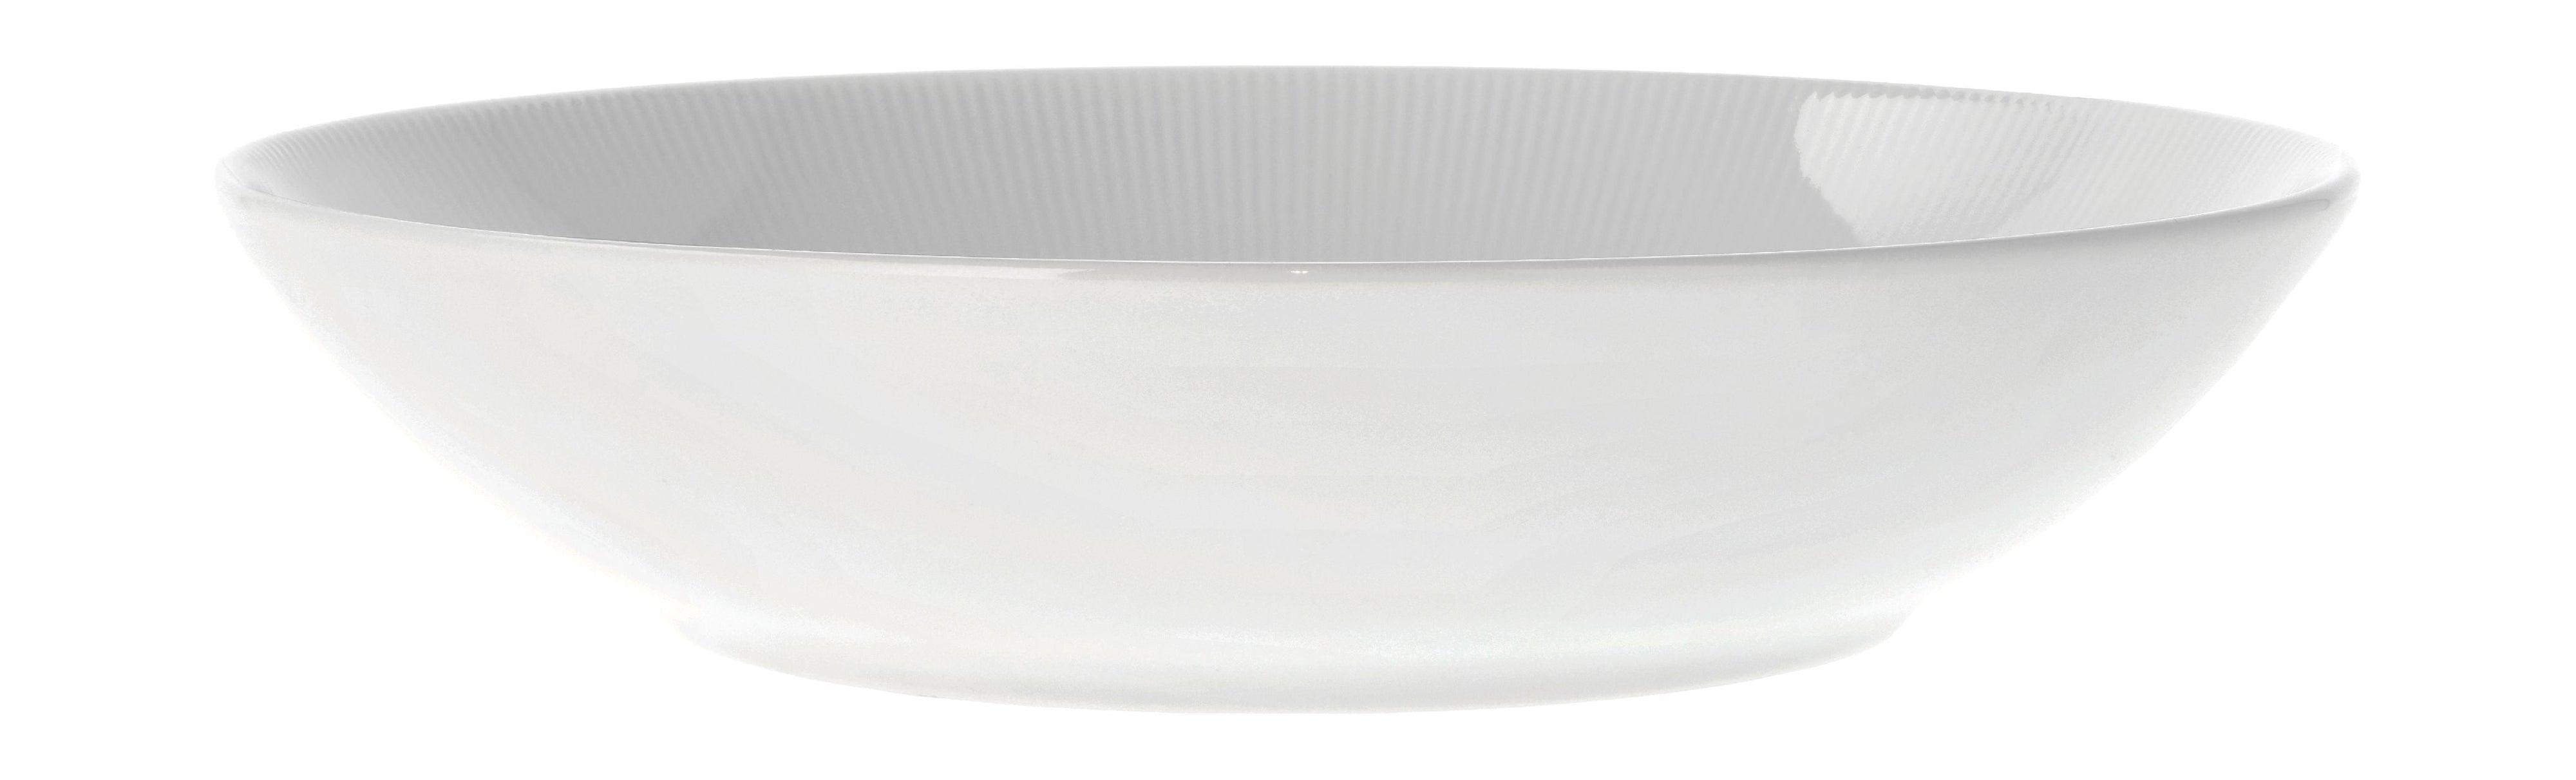 Pillivuyt Eventail Bowl ø23 Cm 0.8 Liter, White